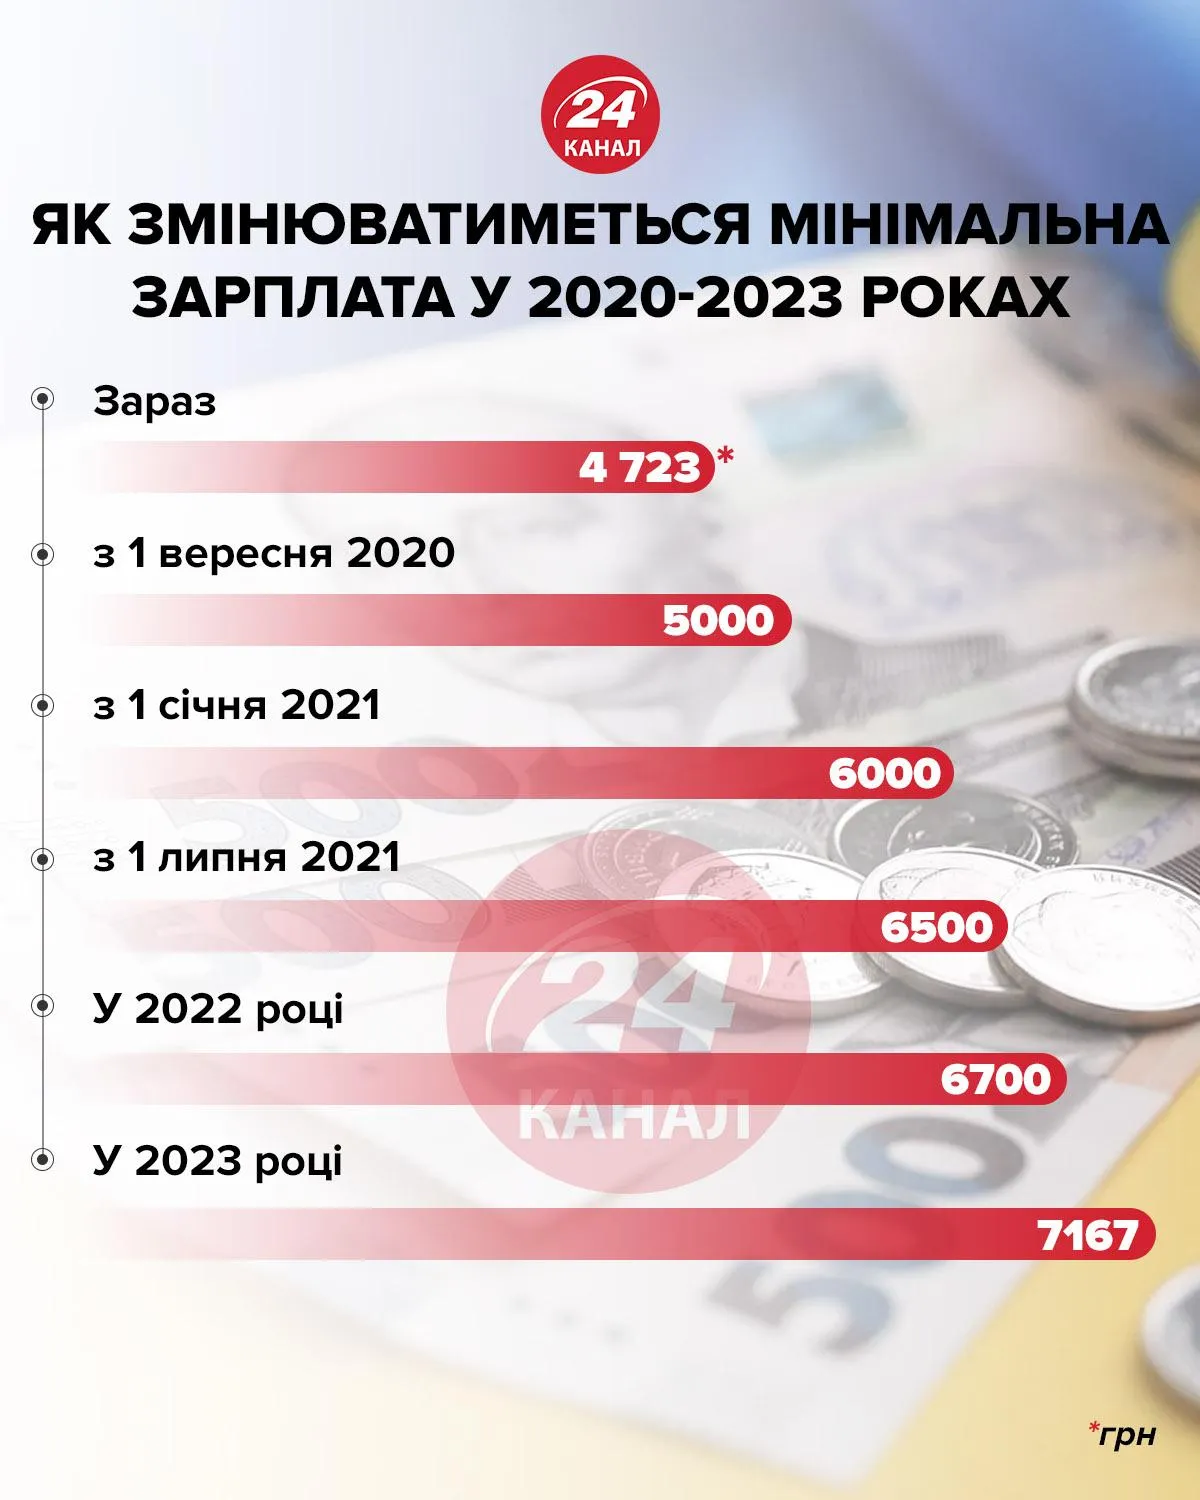 Мінімальна зарплата у 2020-2023 роках